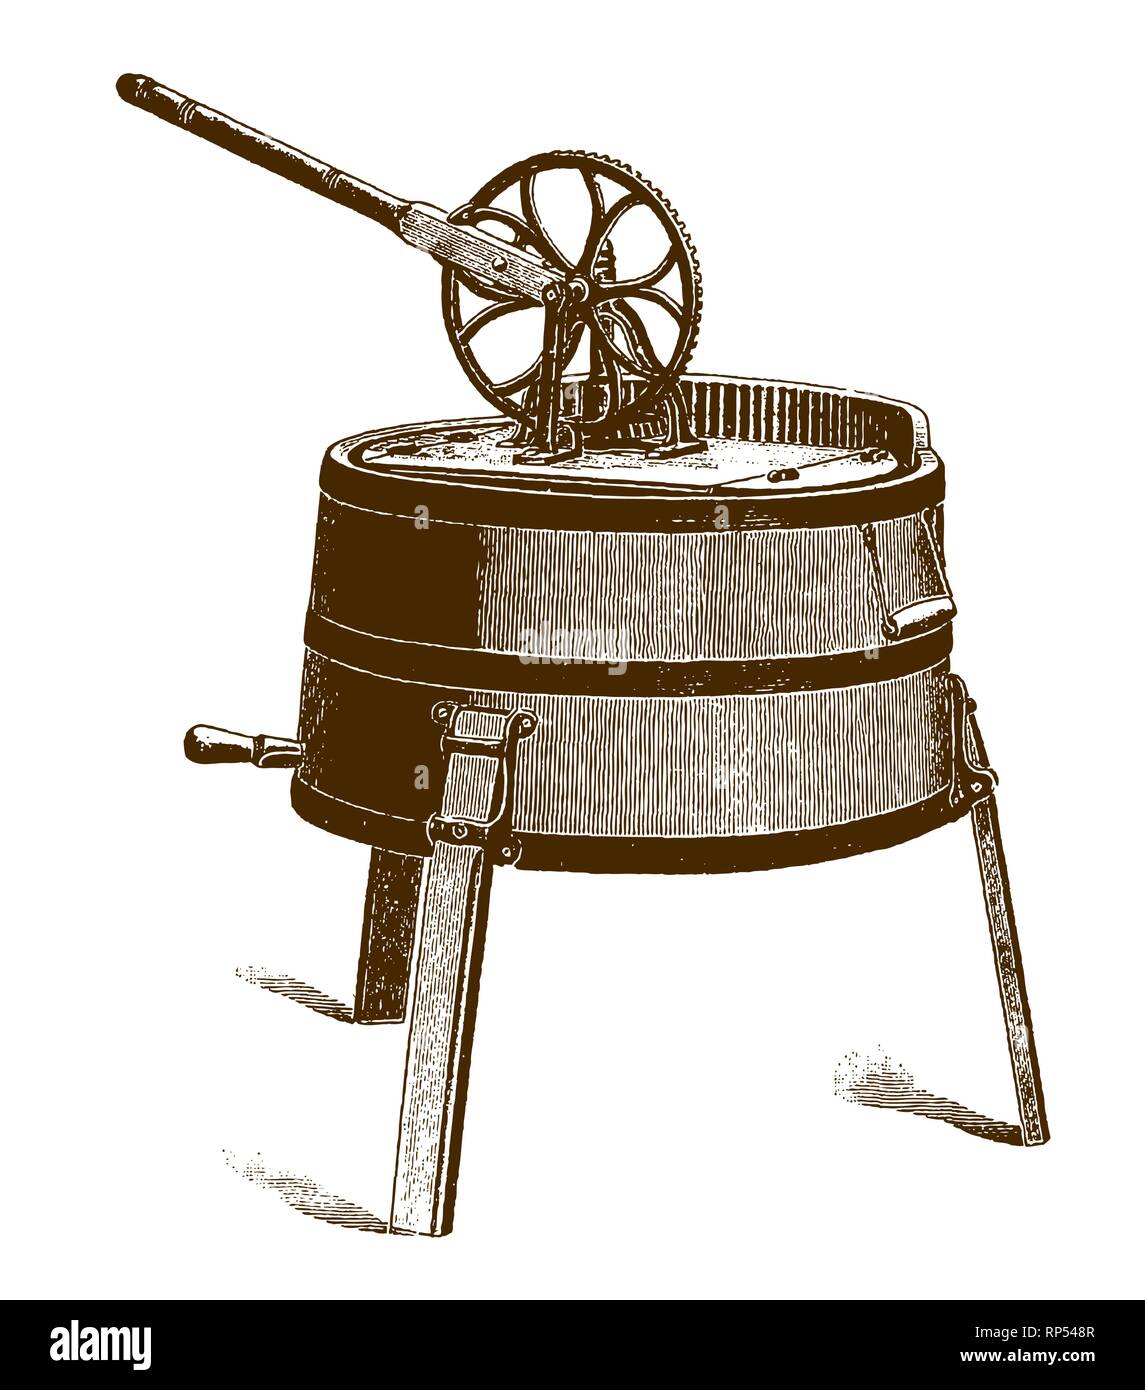 Machine à laver mécanique ancienne, après une gravure ou gravure du XIXe siècle Illustration de Vecteur